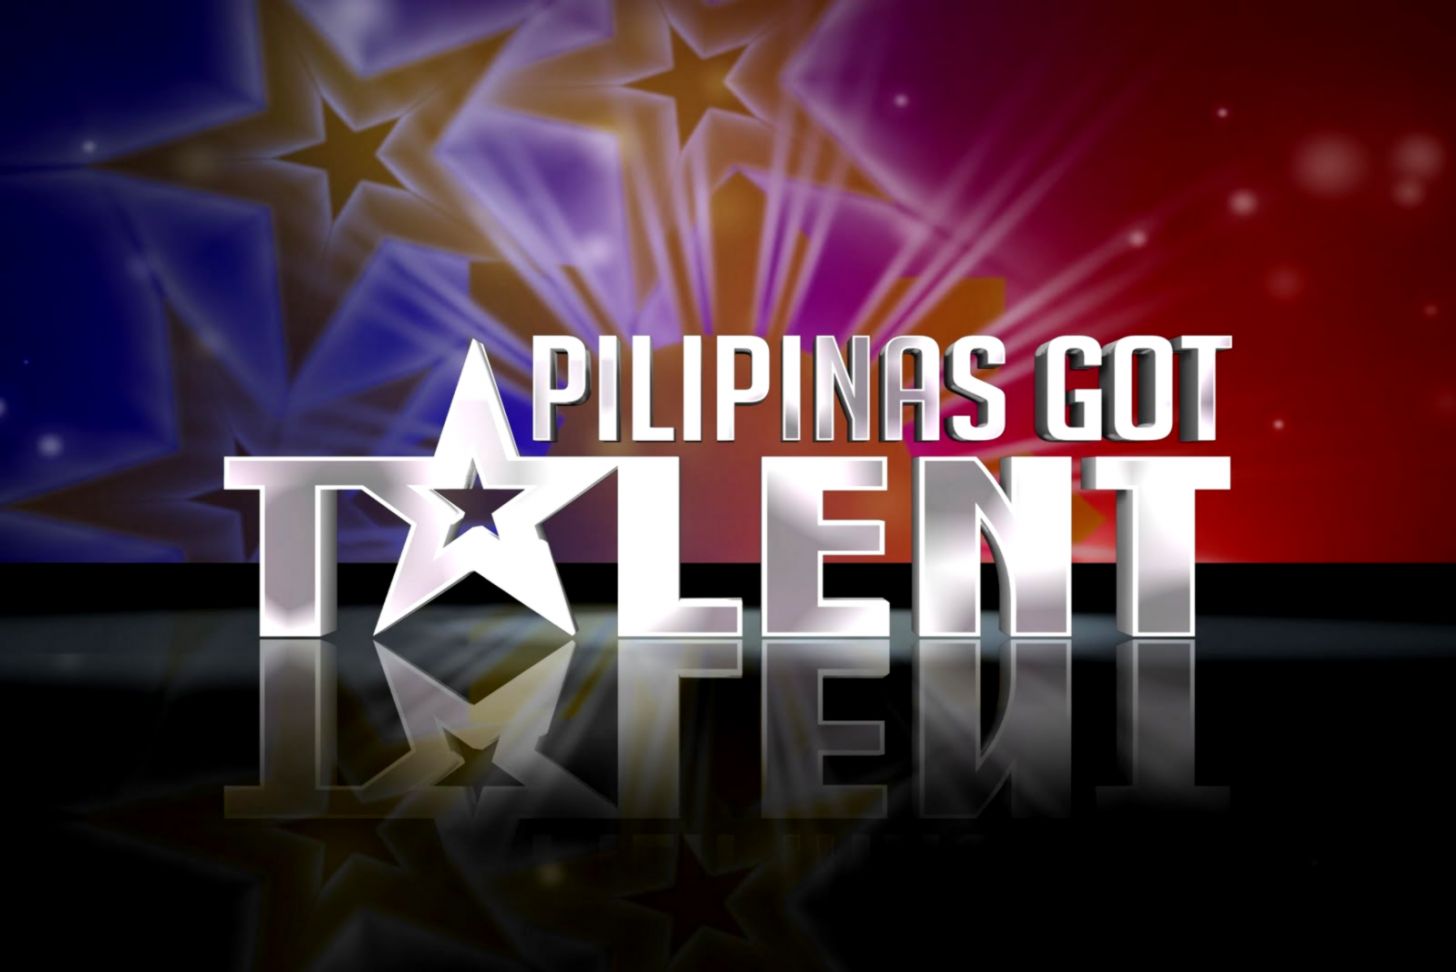 Got Hd Wallpapers - Pilipinas Got Talent Logo Hd , HD Wallpaper & Backgrounds